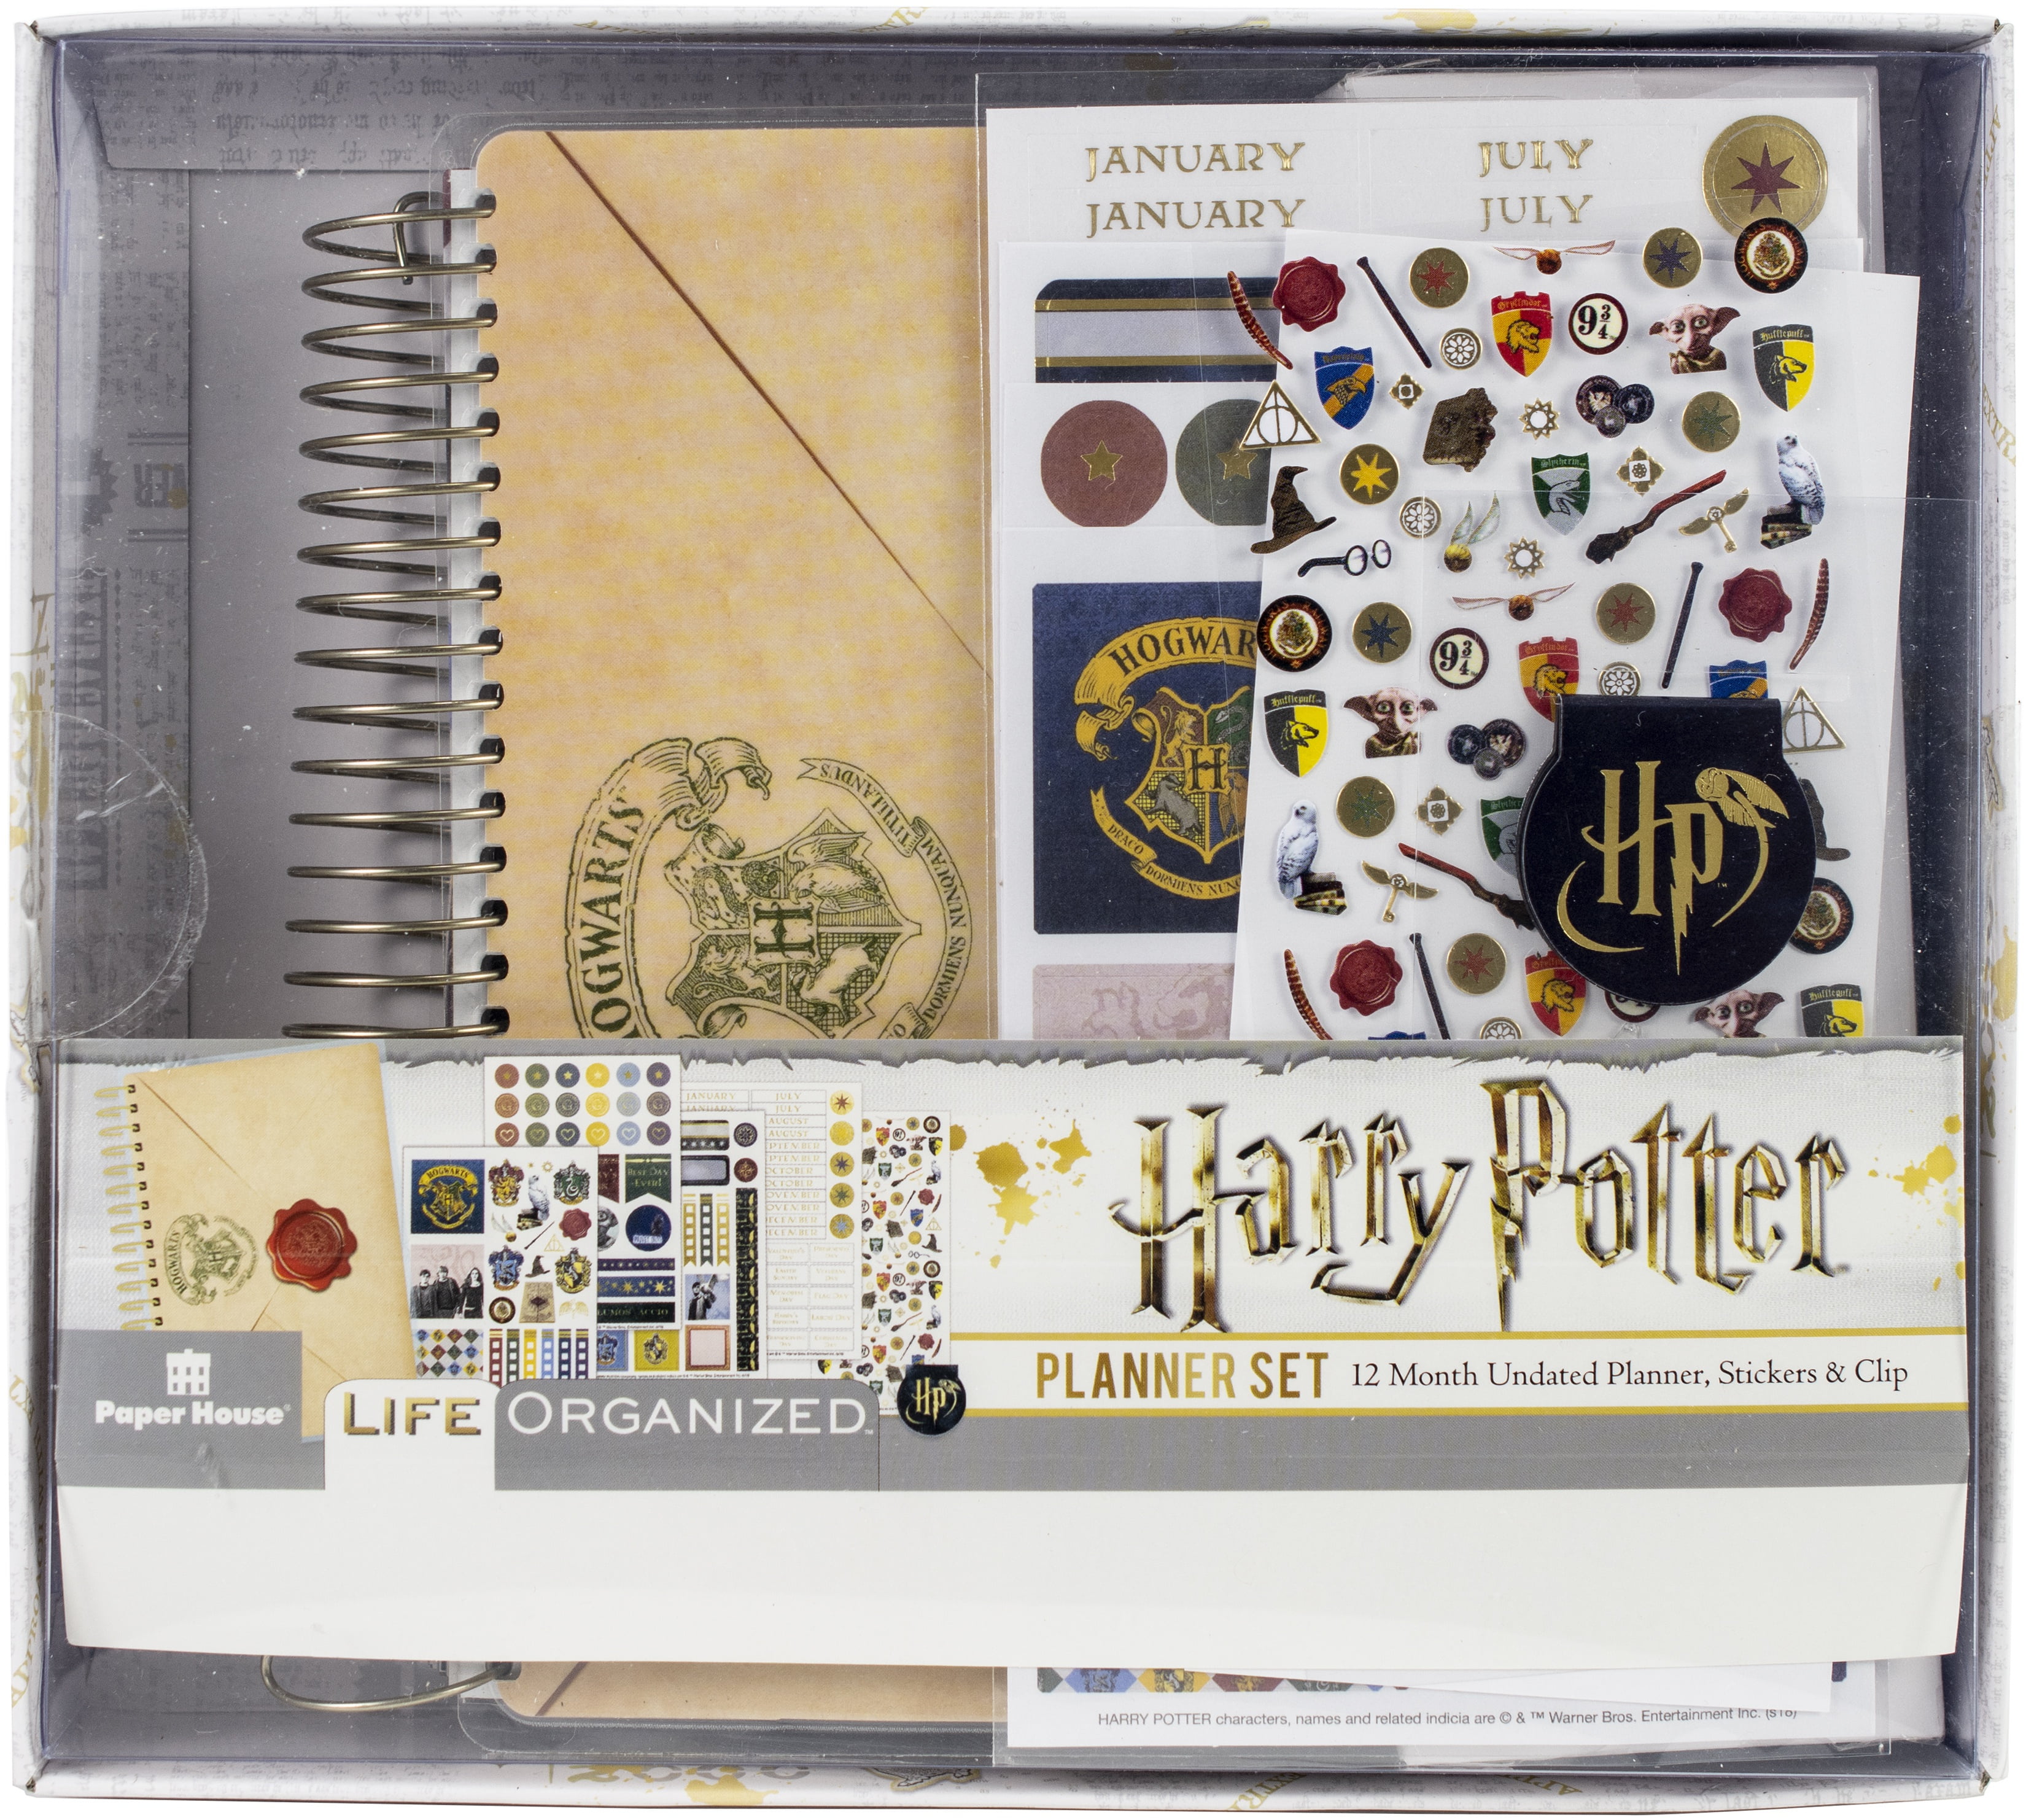 Studygram - Mini kit de cosas de papelería de Harry Potter